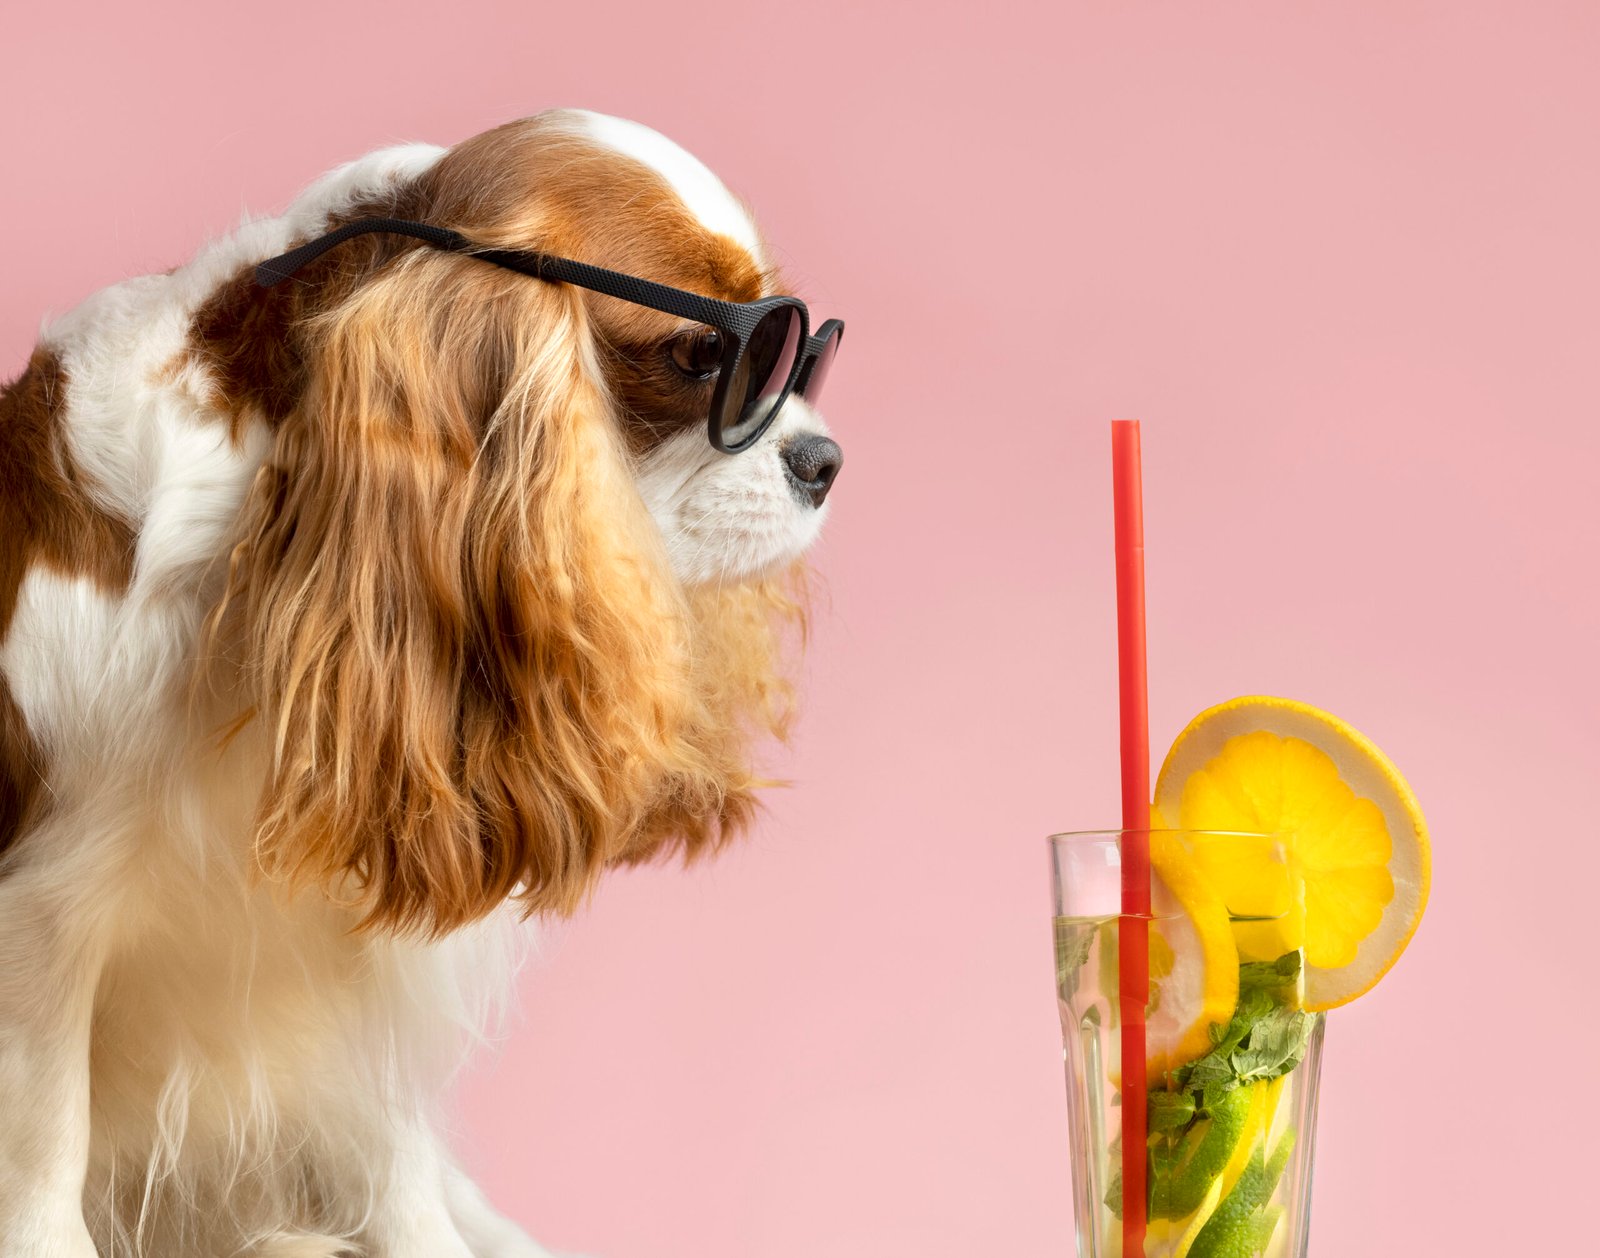 Cool dog wearing sunglasses looking at a refreshing mojito.